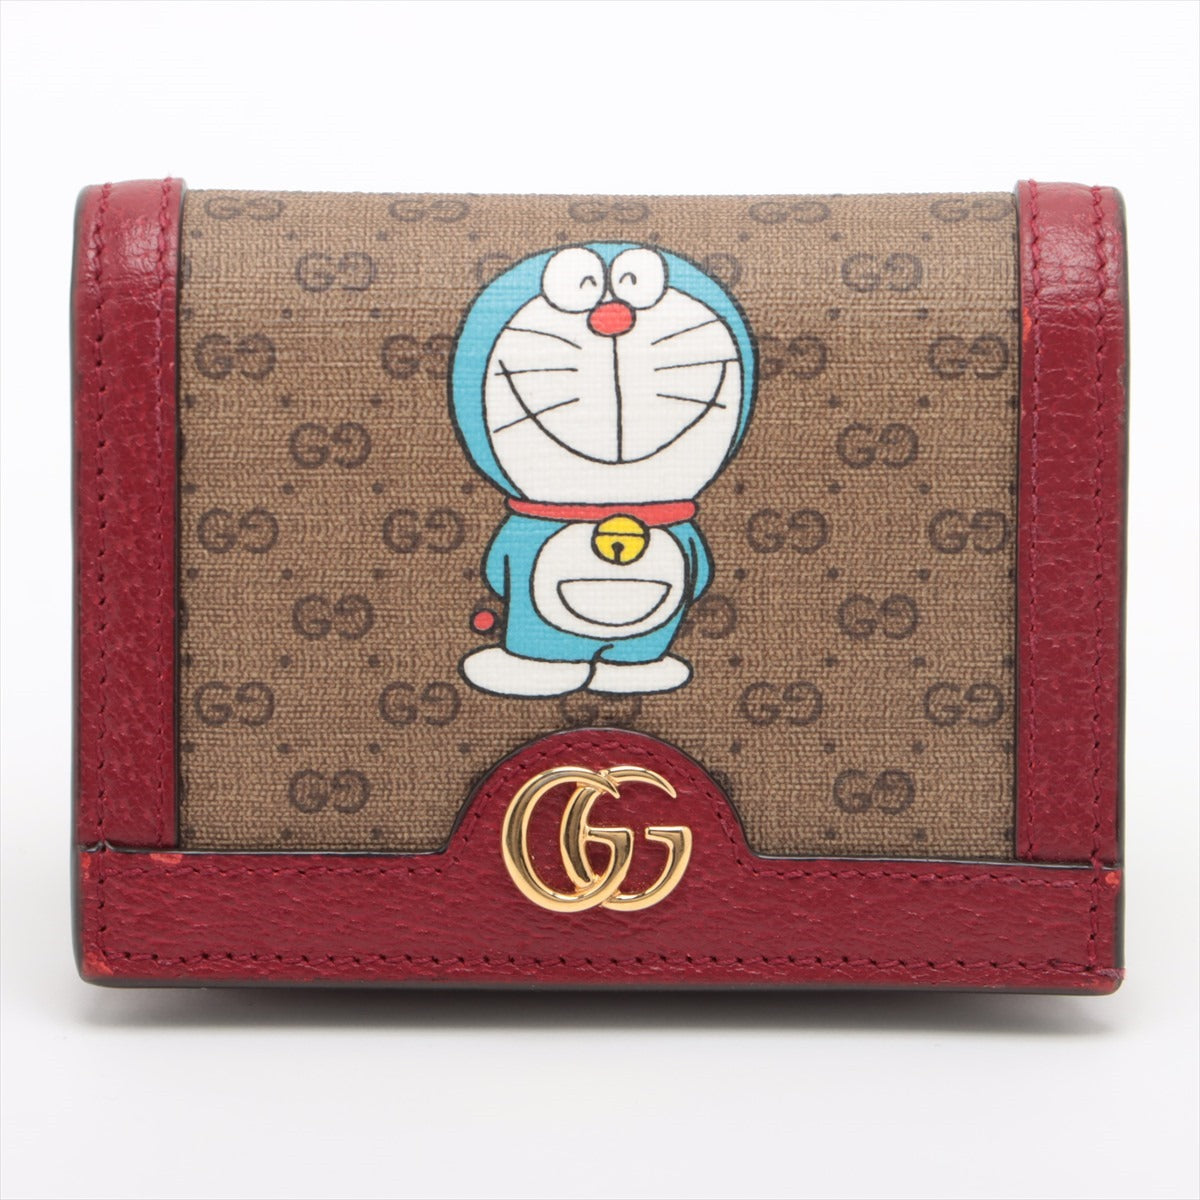 Doraemon x Gucci Micro Guccissima 647788 PVC & leather Wallet Brown x red